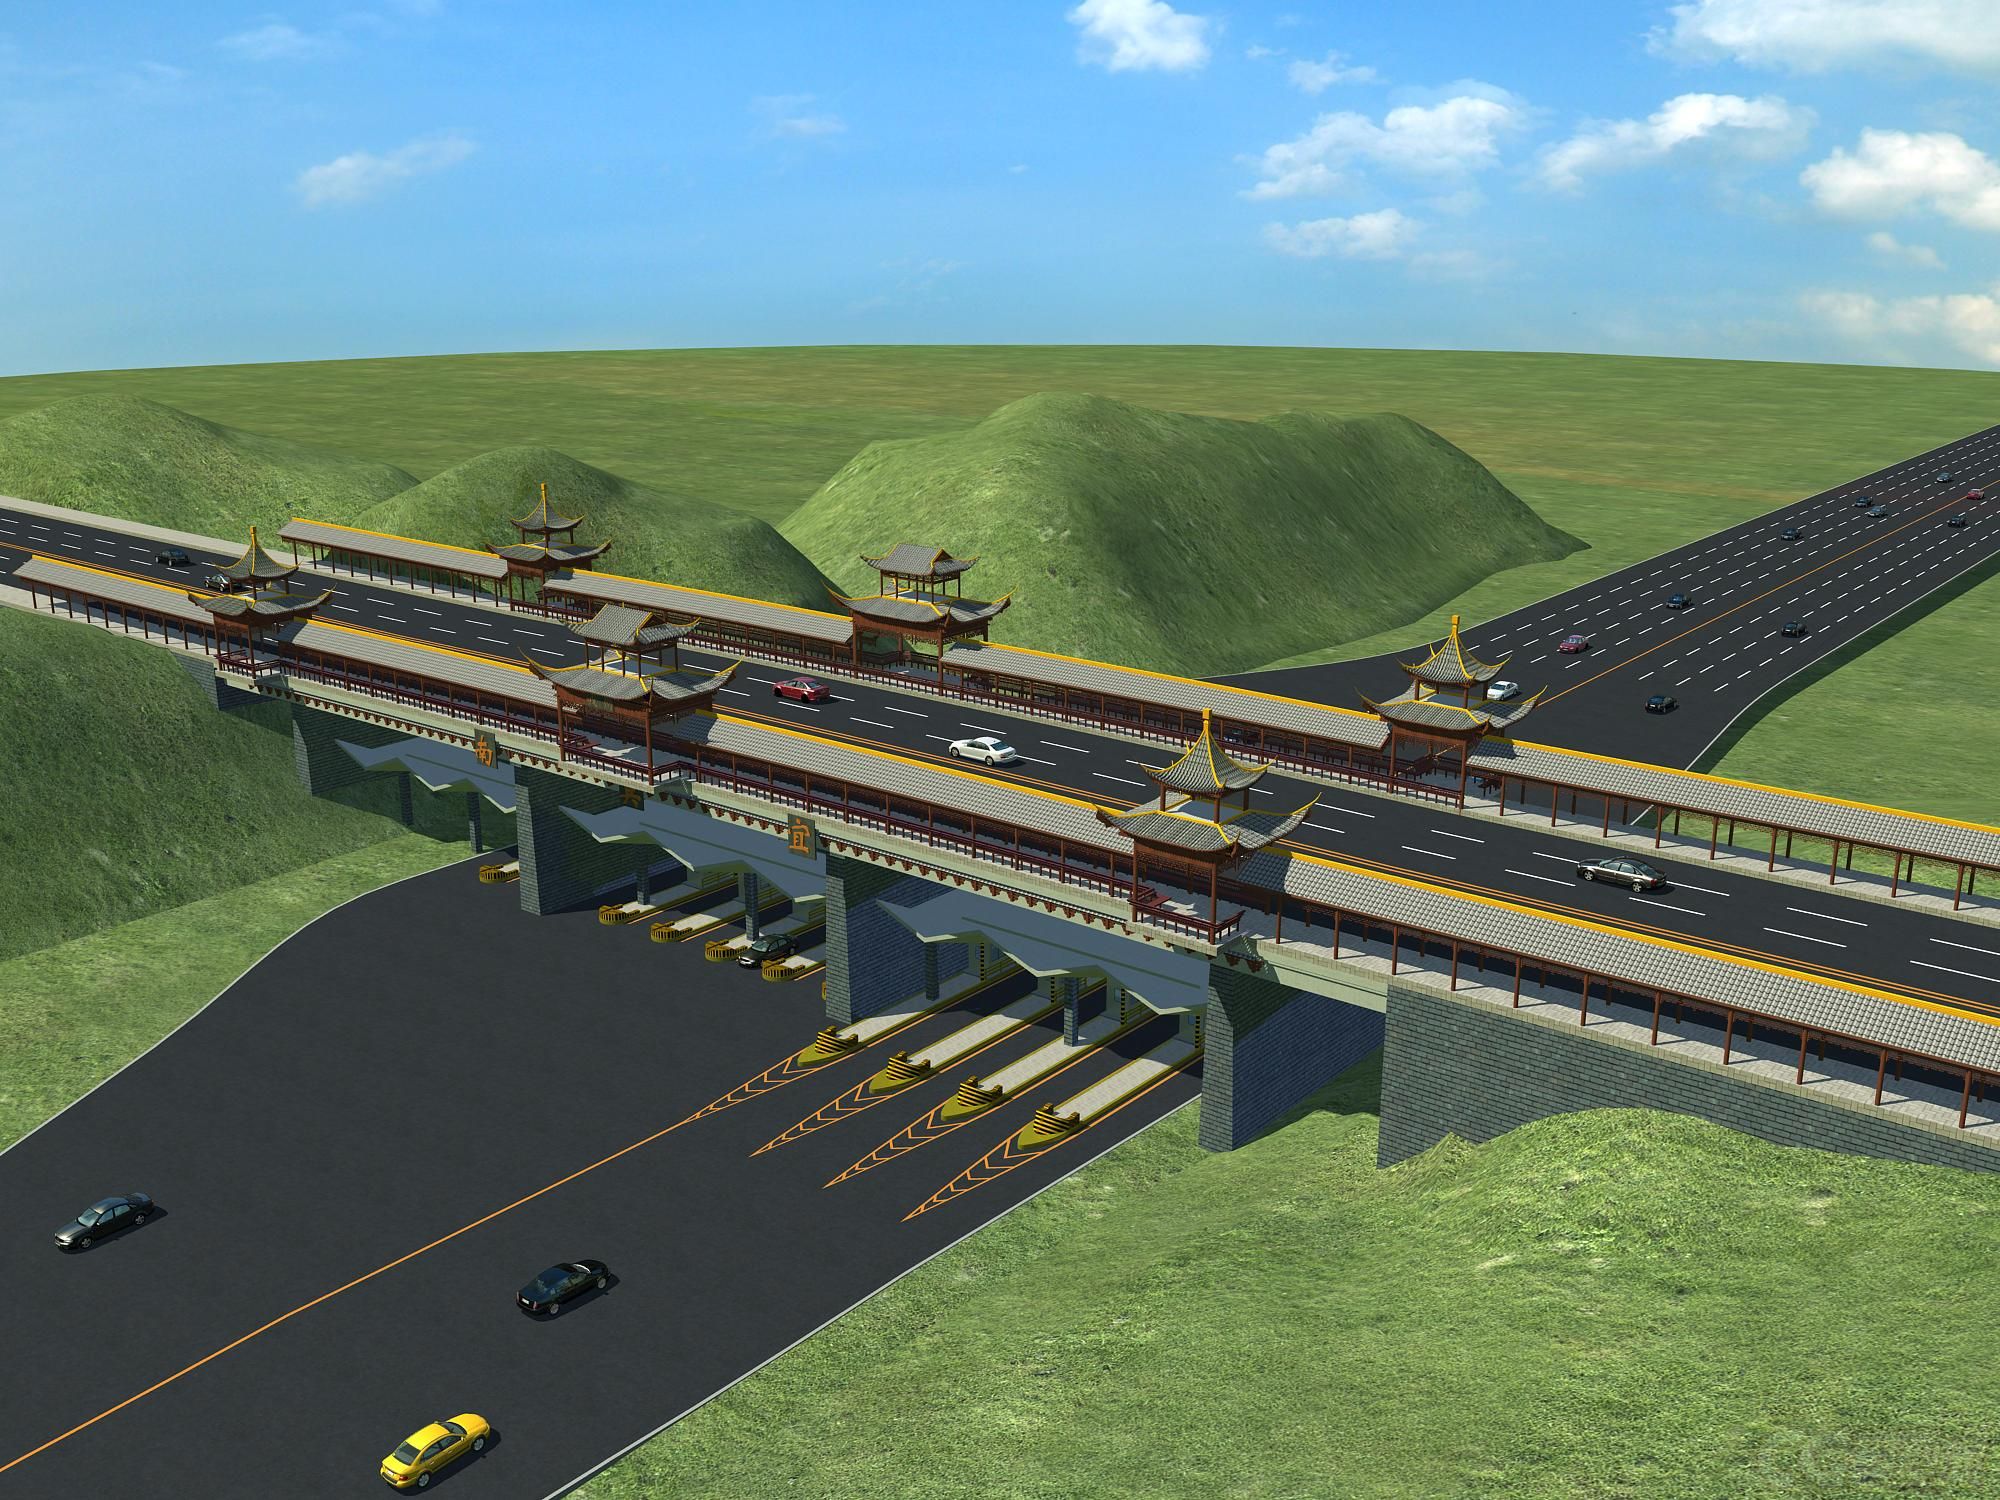 高速收费站3D模型 高速路模型-自然场景模型库-模型下载-cg模型网